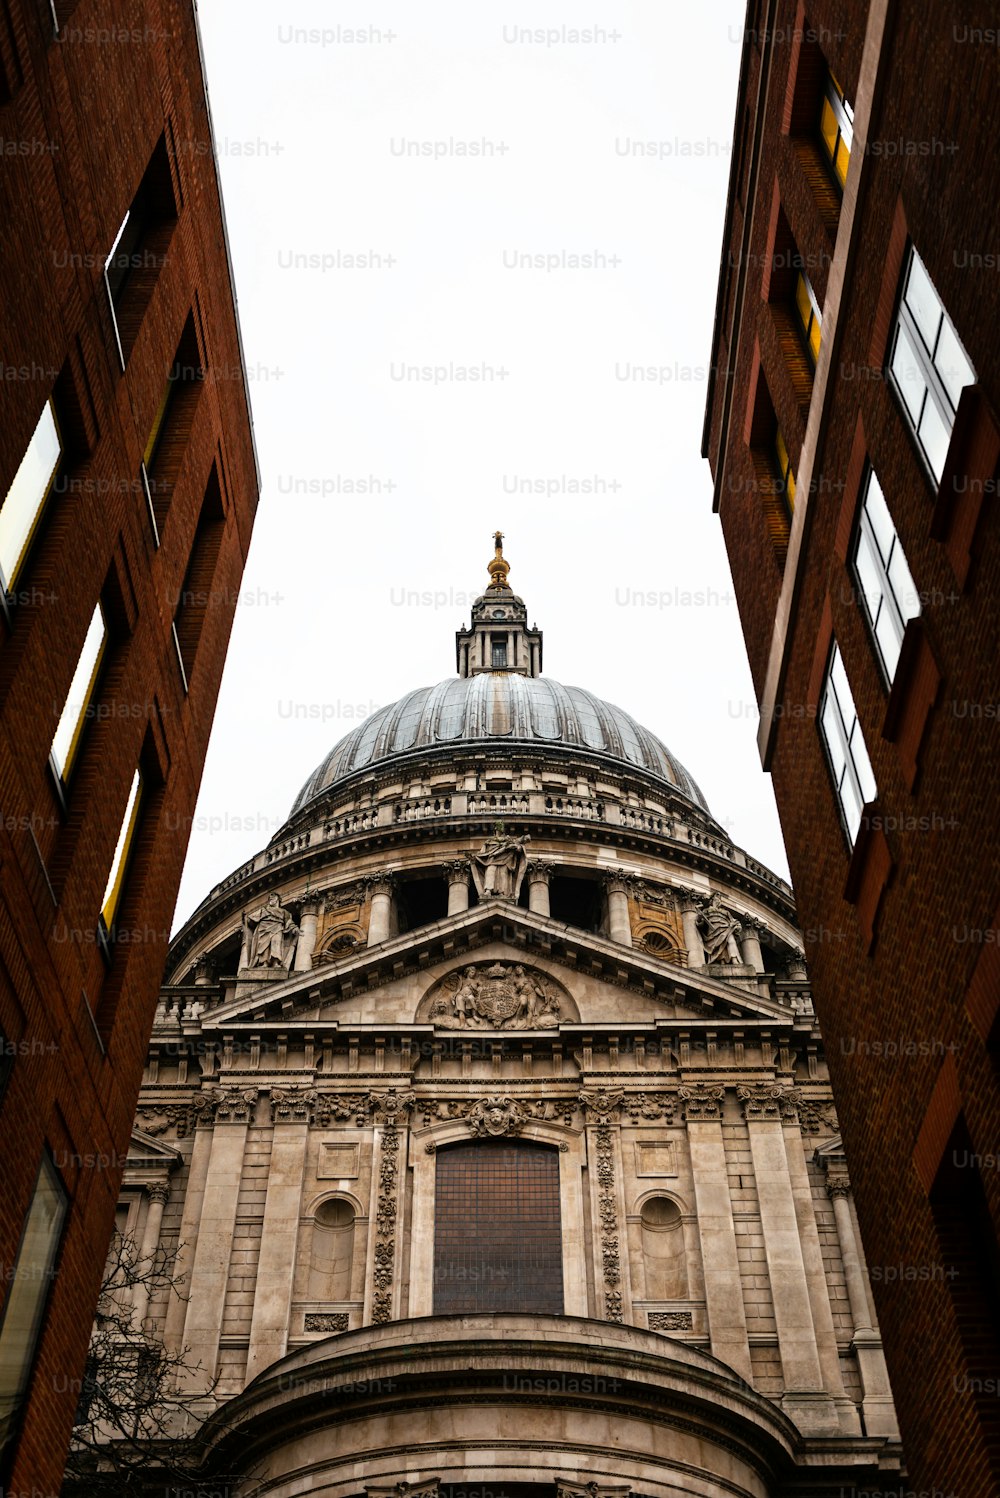 Vista lateral de la Catedral de San Pablo en Londres vista a través de una calle estrecha. Construido después del Gran Incendio de Londres de 1666, es la obra maestra de Christopher Wren y una de las atracciones más turísticas de la ciudad.